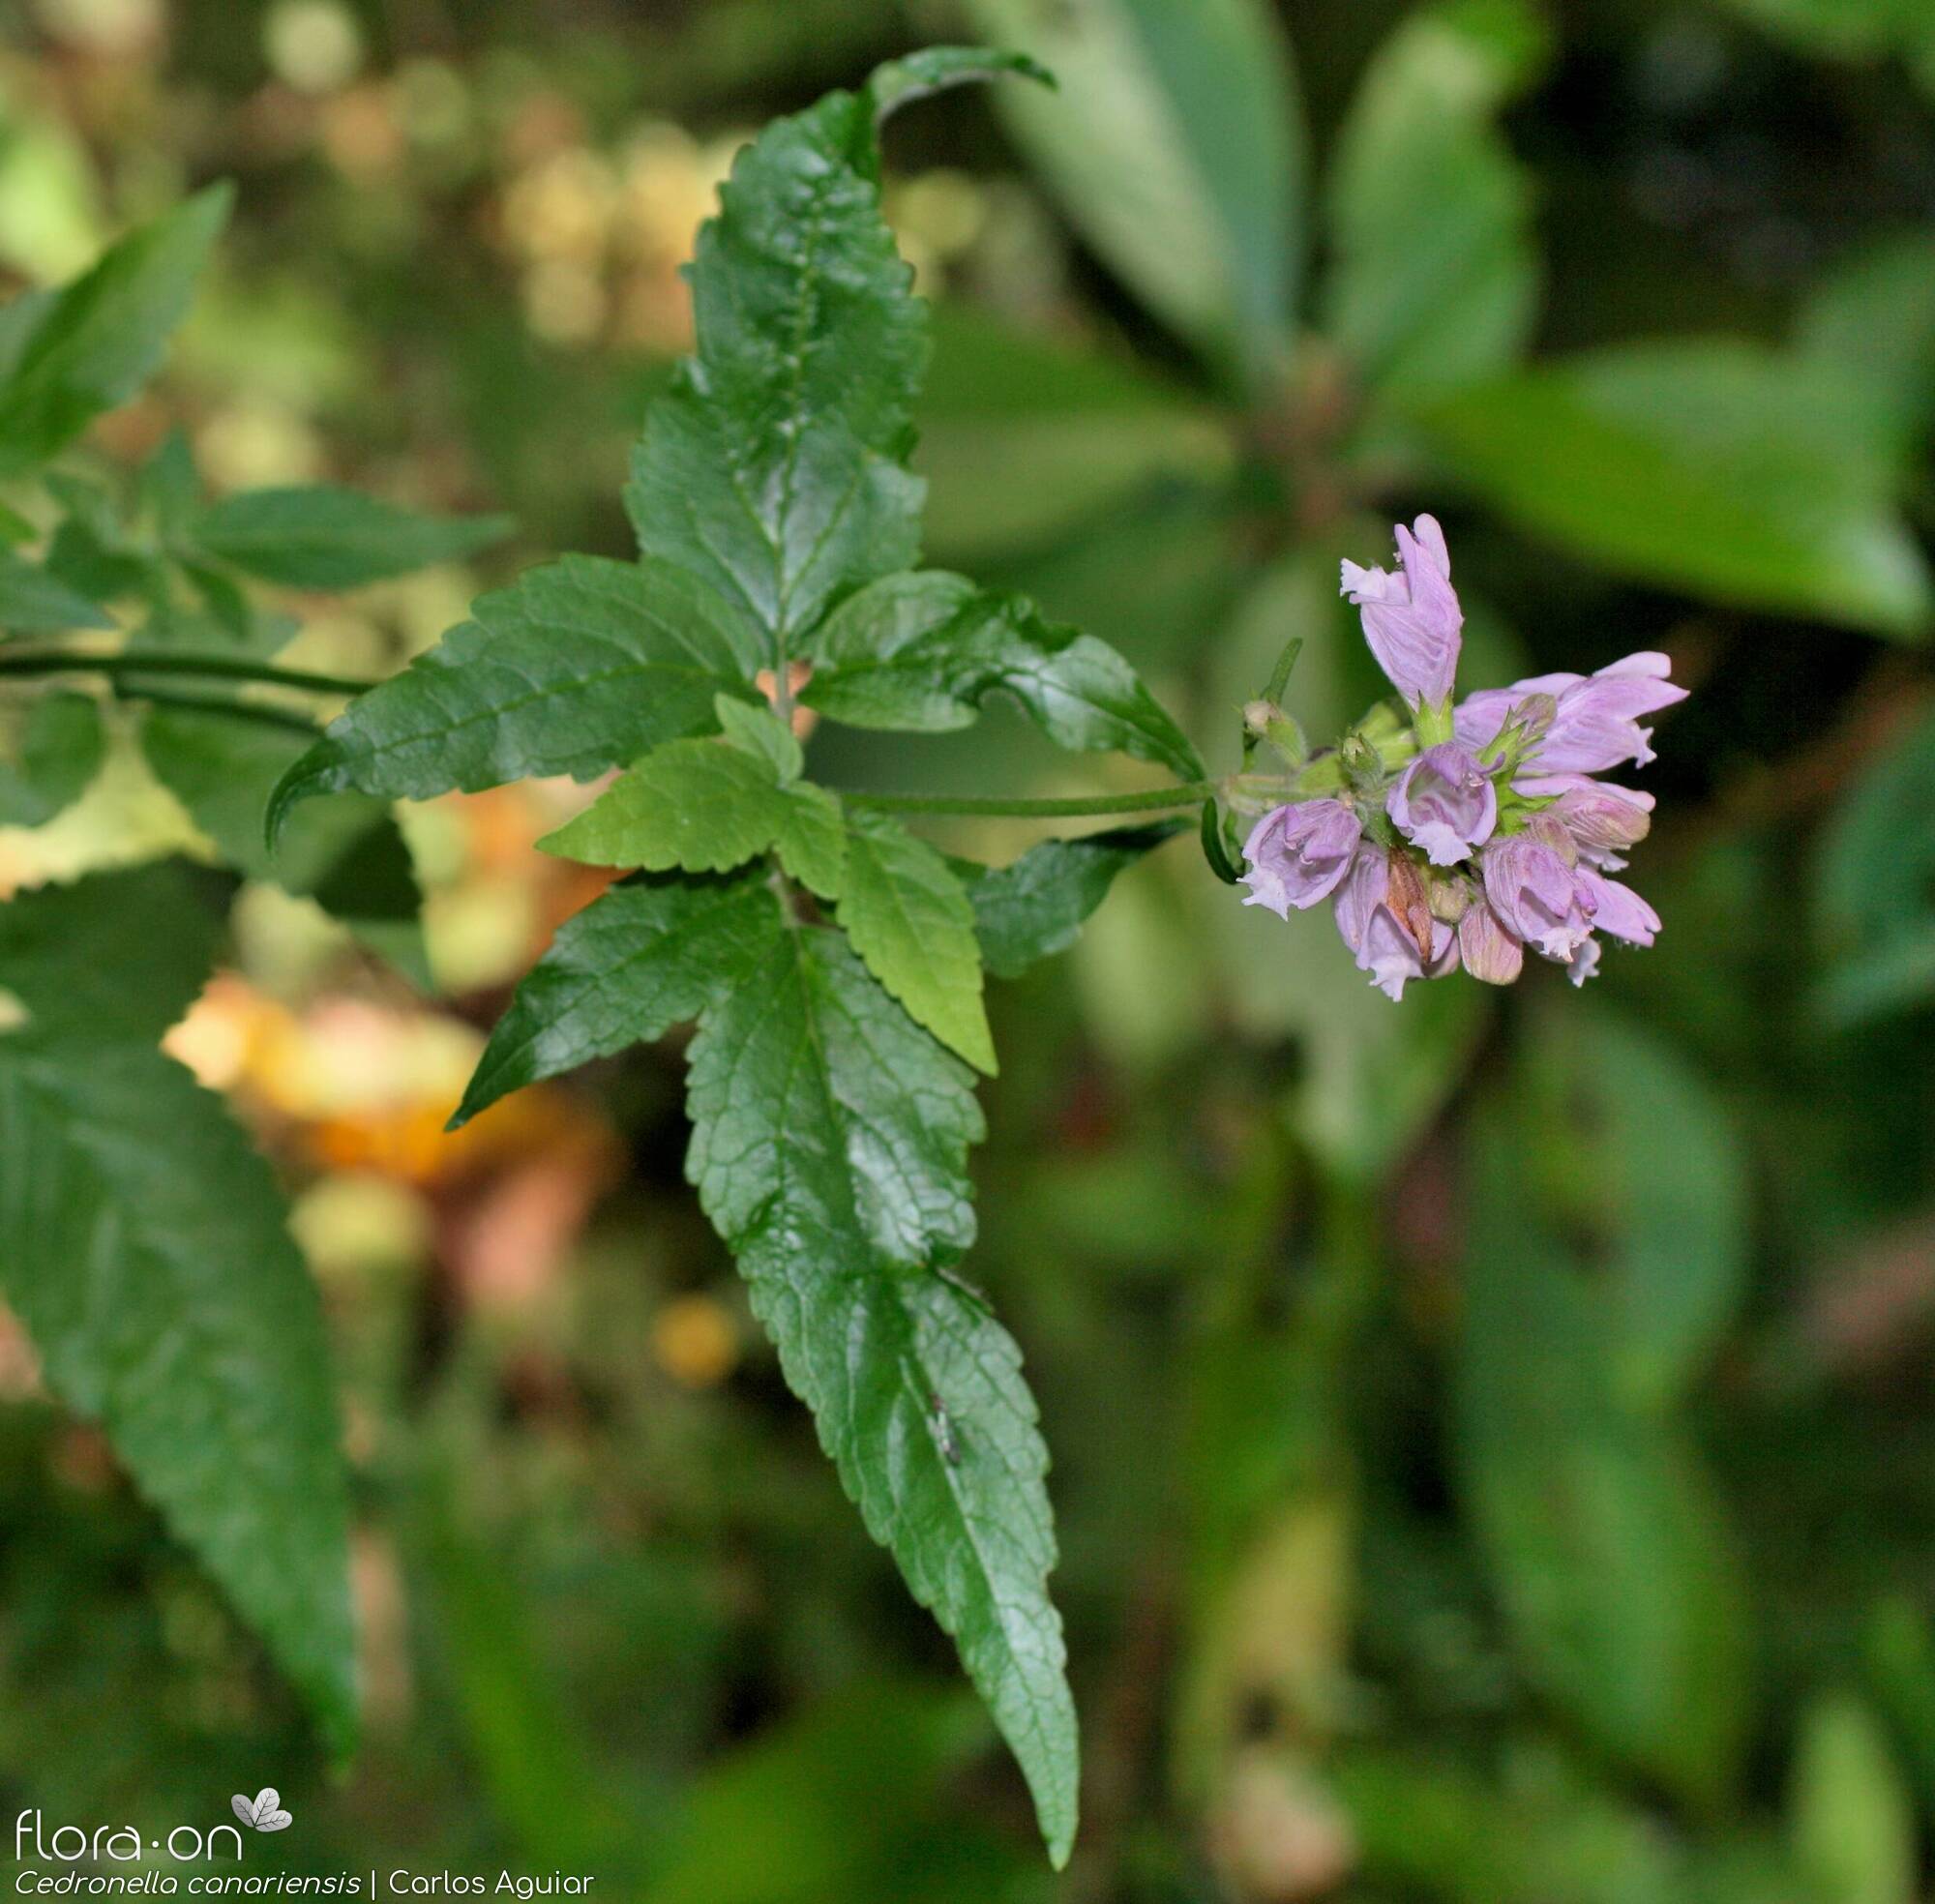 Cedronella canariensis - Flor (geral) | Carlos Aguiar; CC BY-NC 4.0